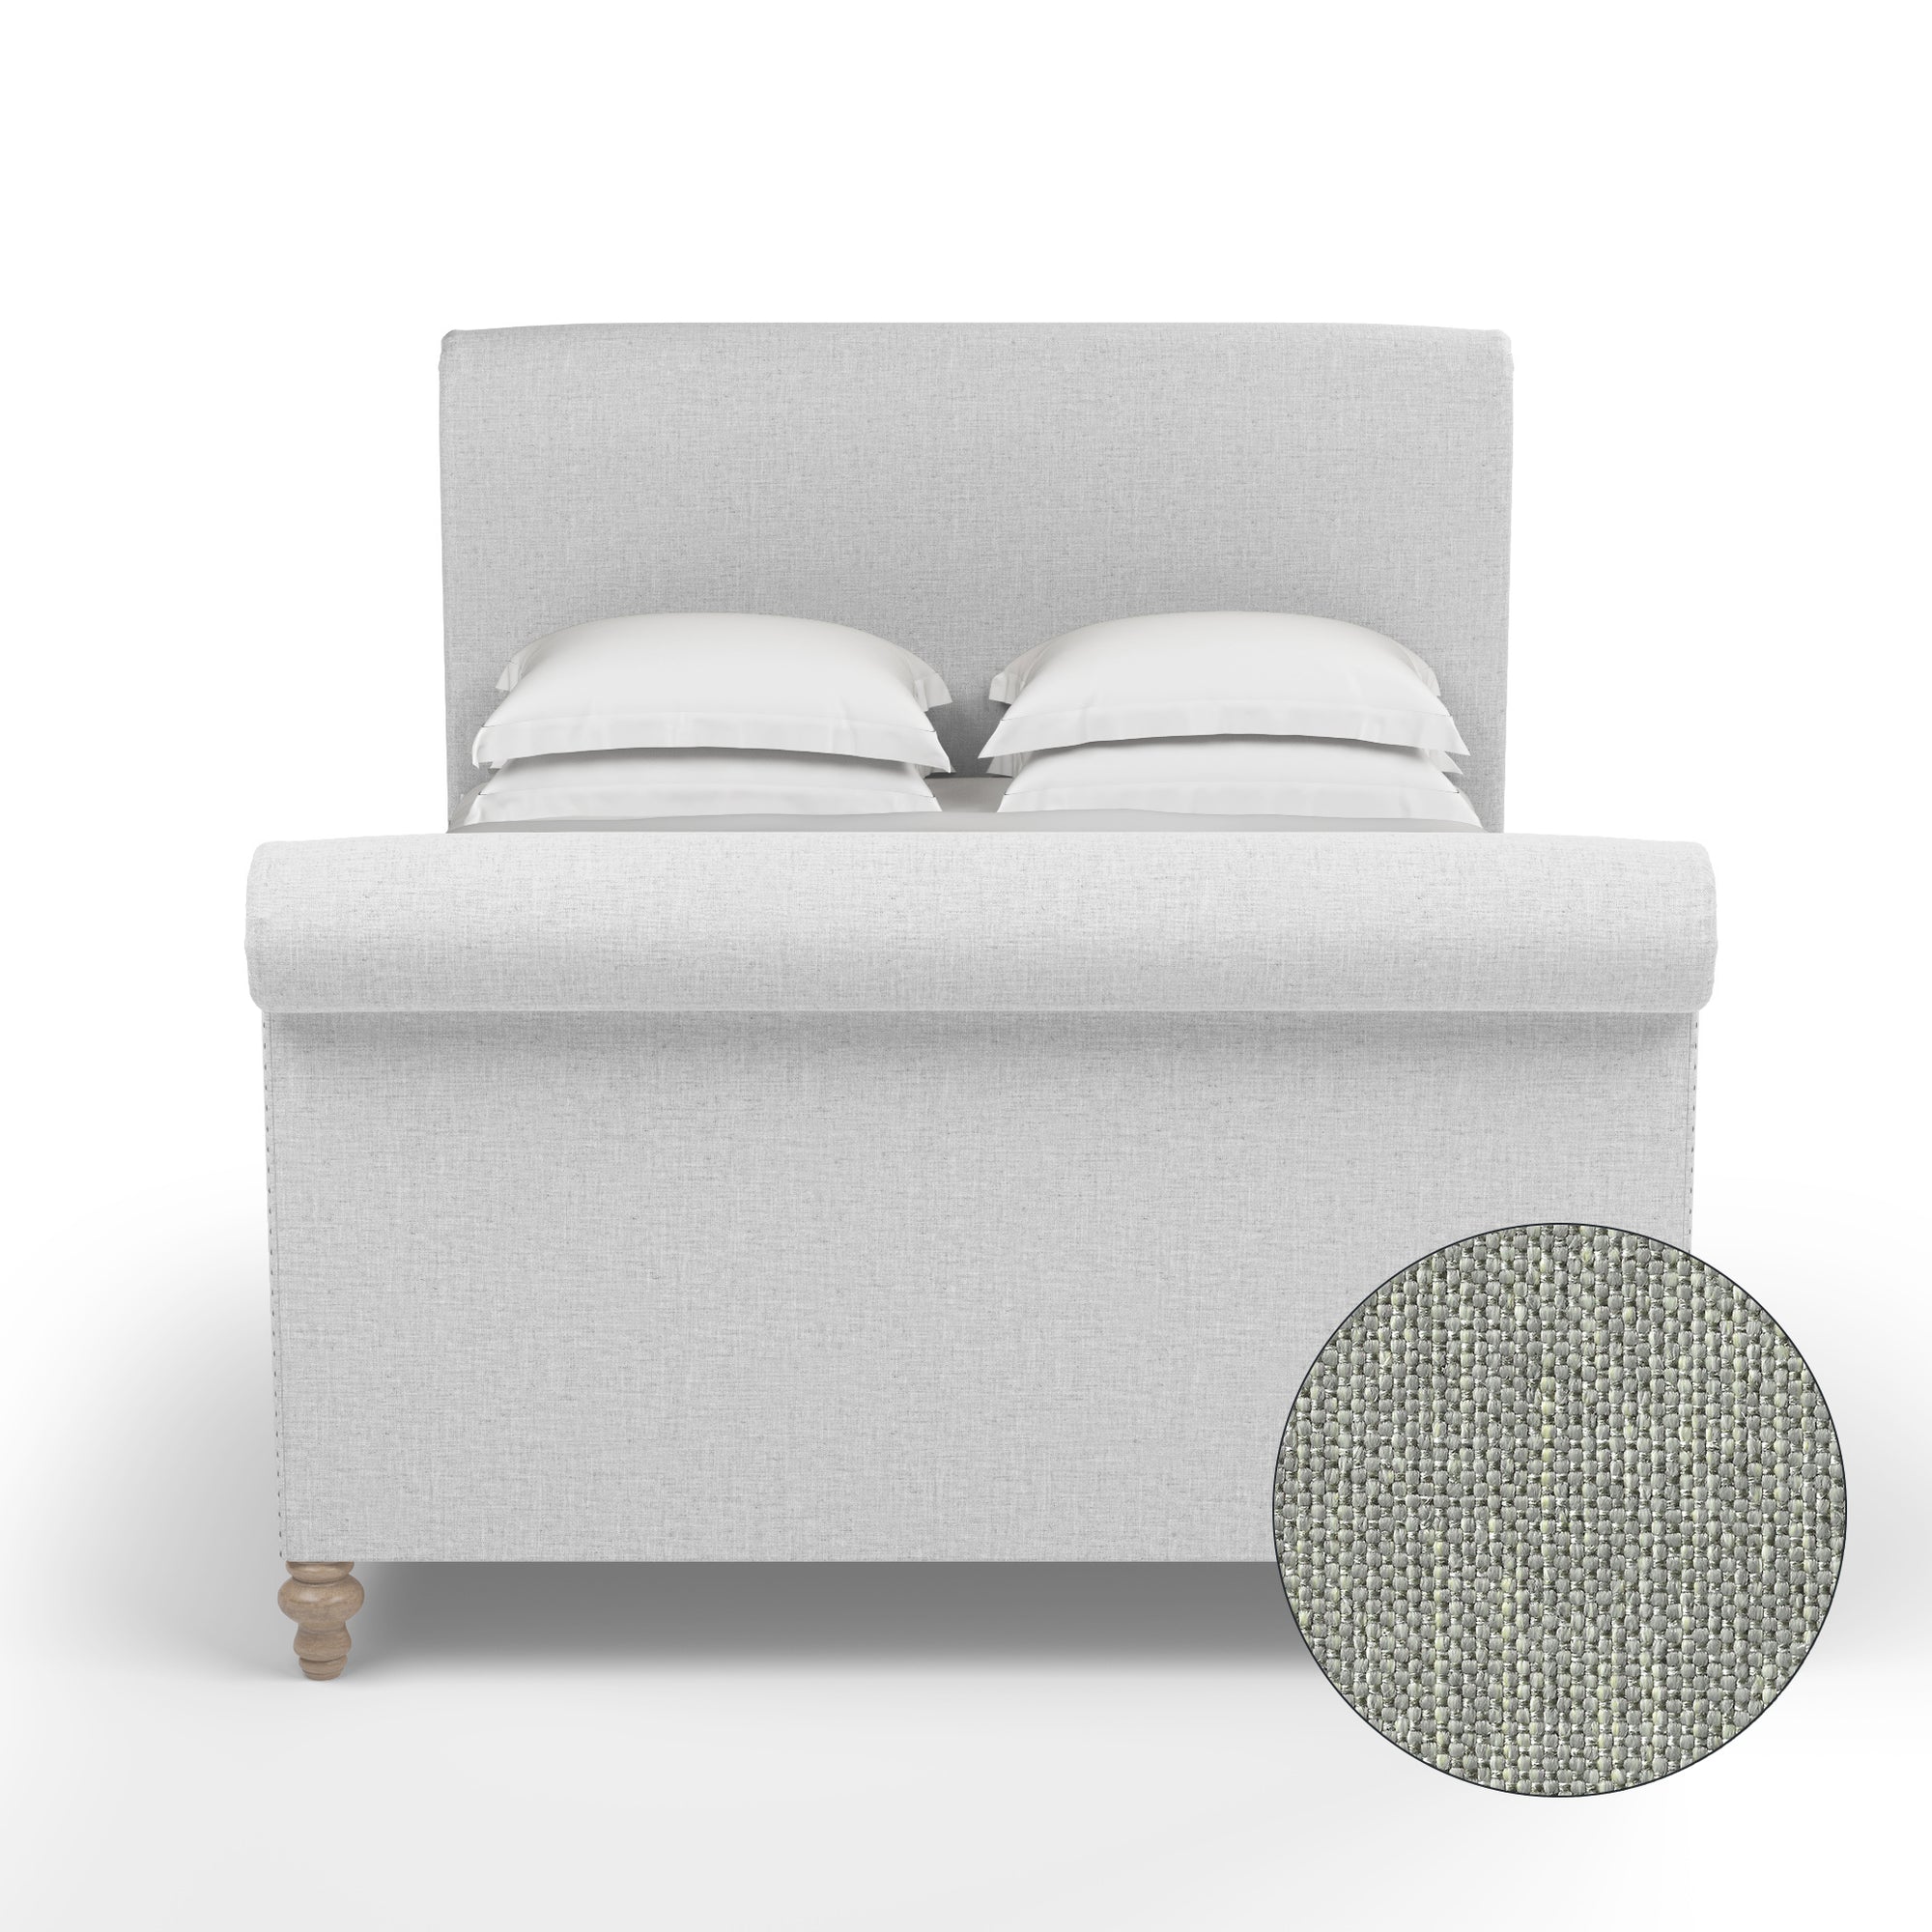 Empire Scroll Bed w/ Footboard - Haze Pebble Weave Linen